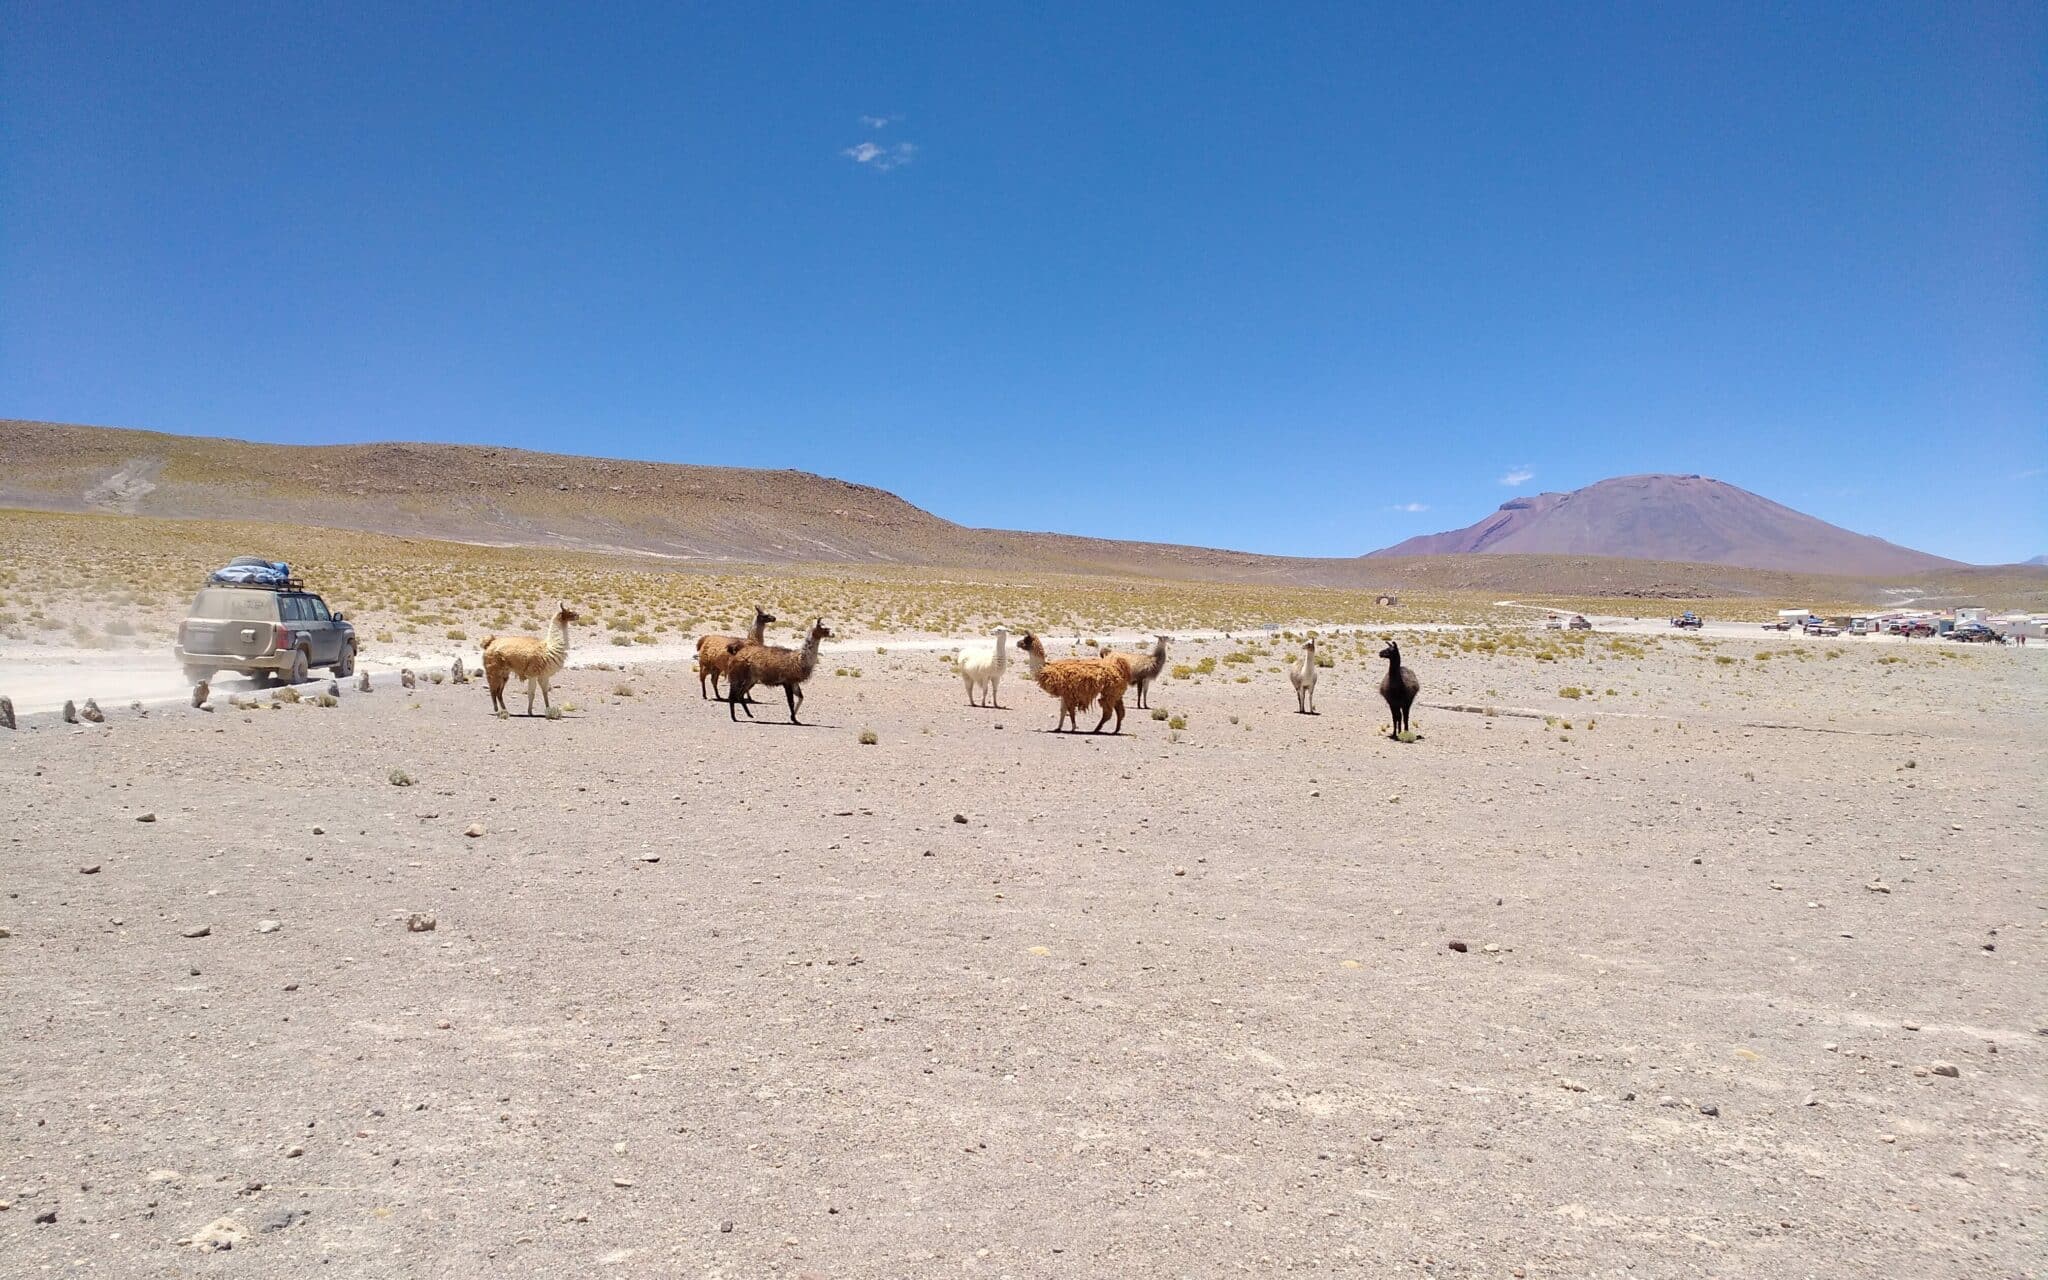 Lamas und Alpakas inmitten einer trockenen Landschaft, auf einem Schotterweg fährt ein Geländewagen vorbei.